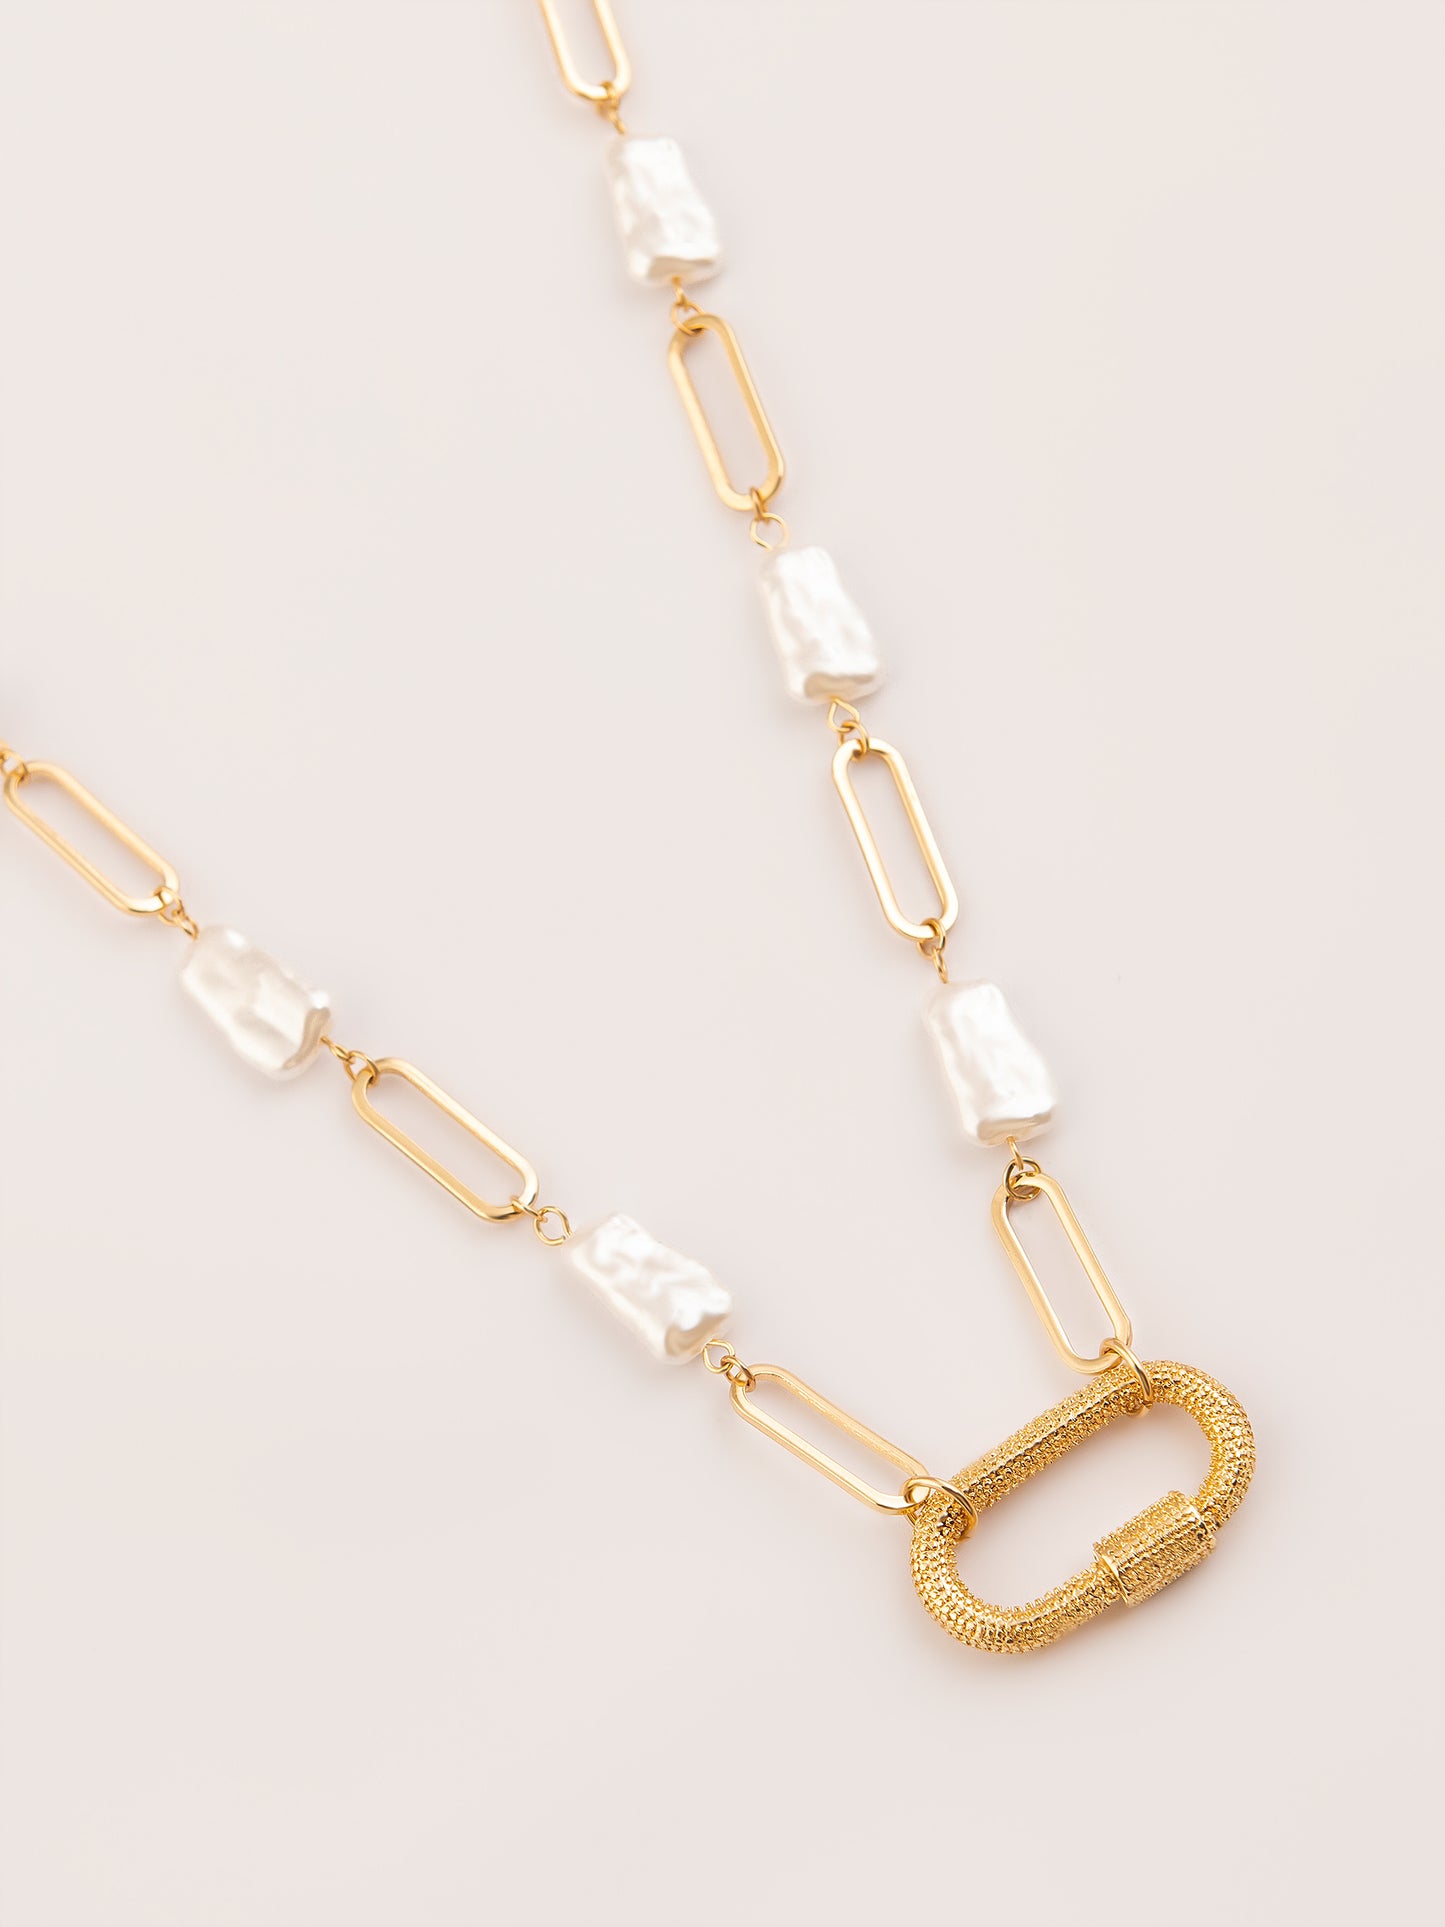 Embellished Loop Necklace